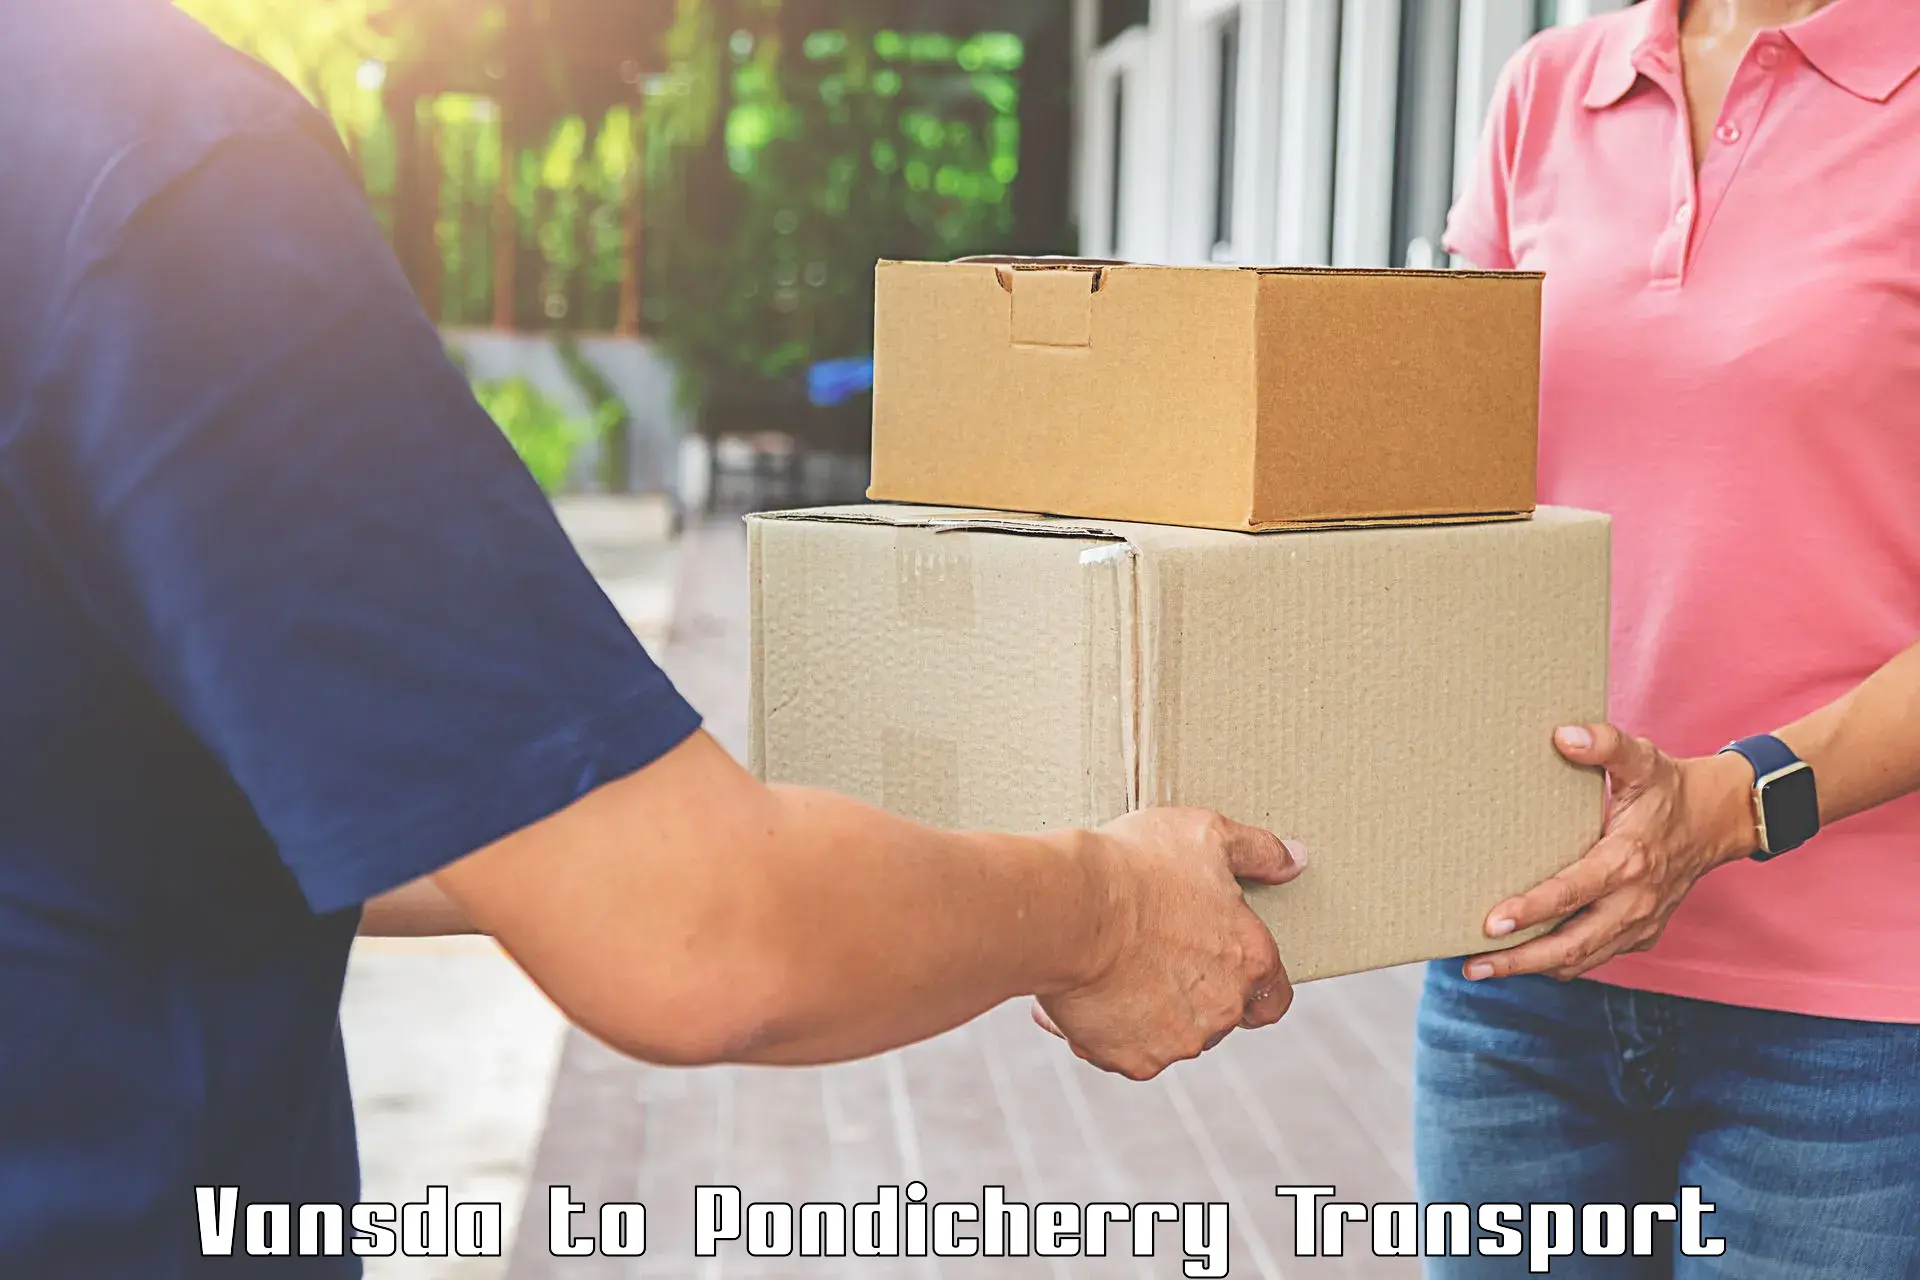 Furniture transport service Vansda to Pondicherry